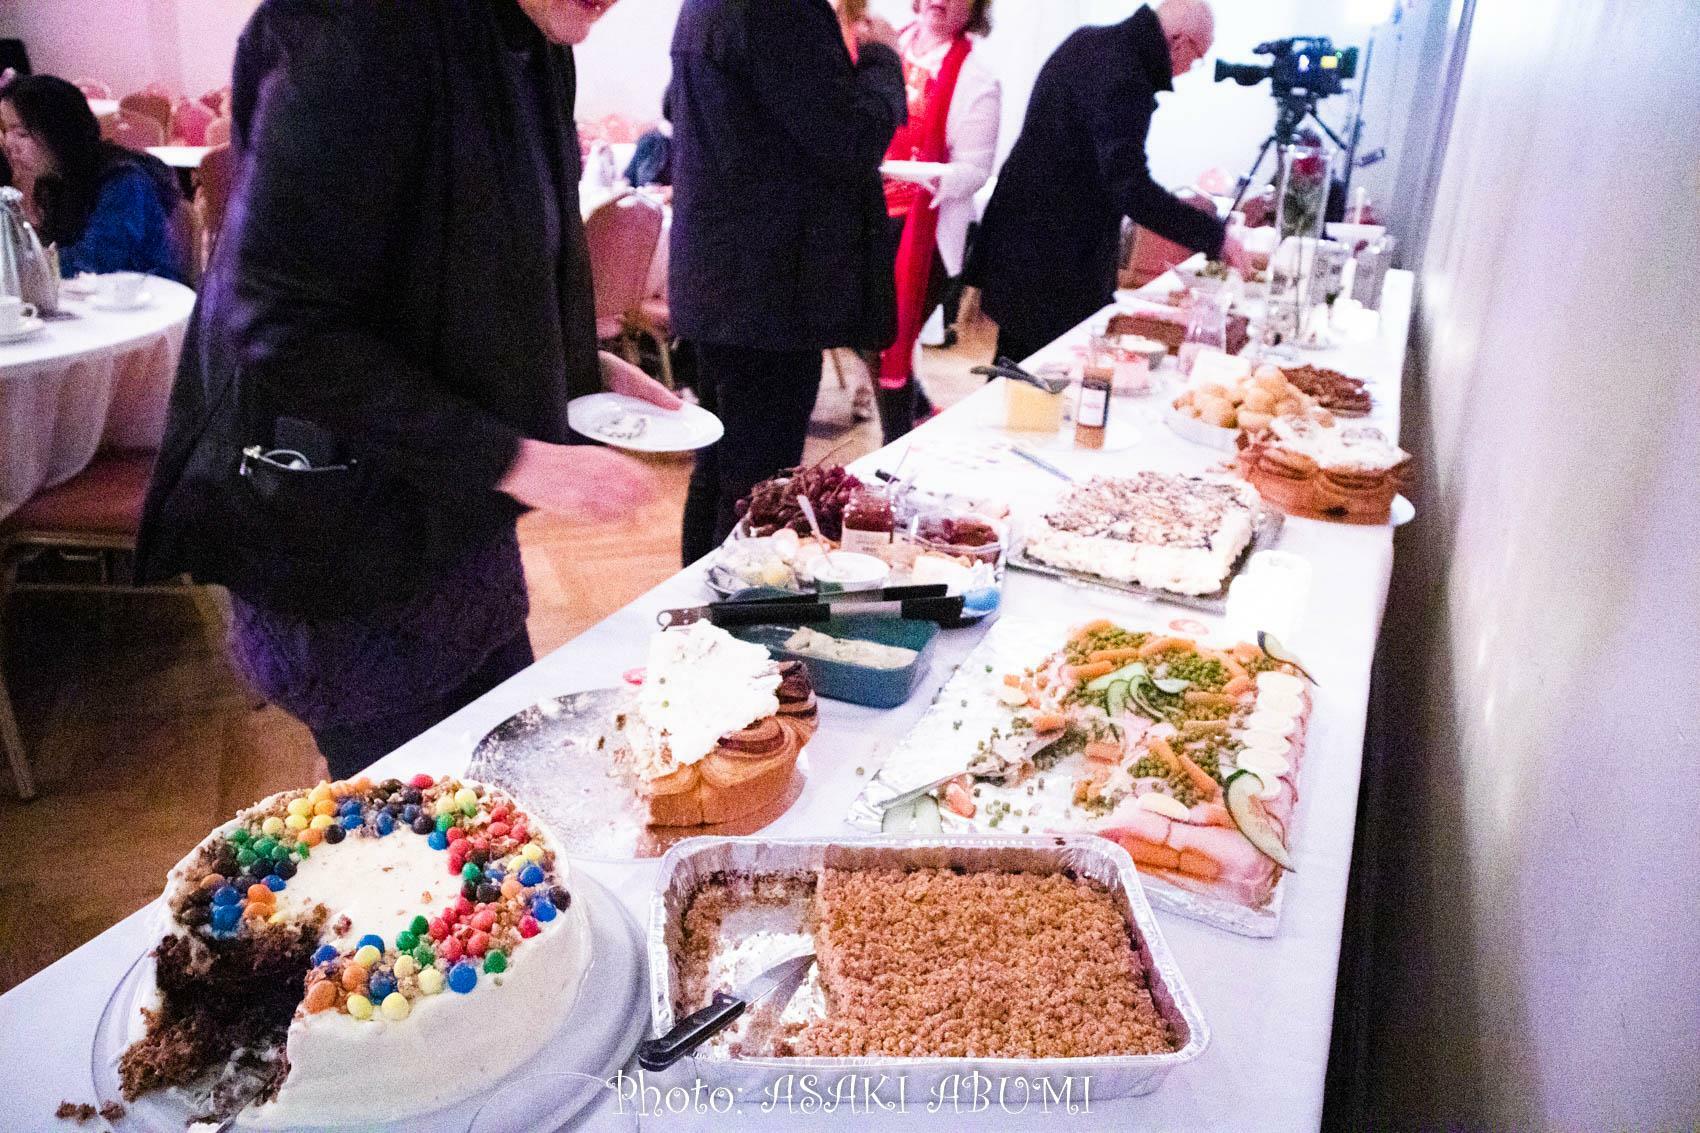 アイスランドでは投票日は各政党の選挙オフィスでケーキとコーヒーパーティーが始まる。ケーキ食べ放題で、市民は選挙の日を楽しむ。複数の政党をまわる市民も多い　筆者撮影